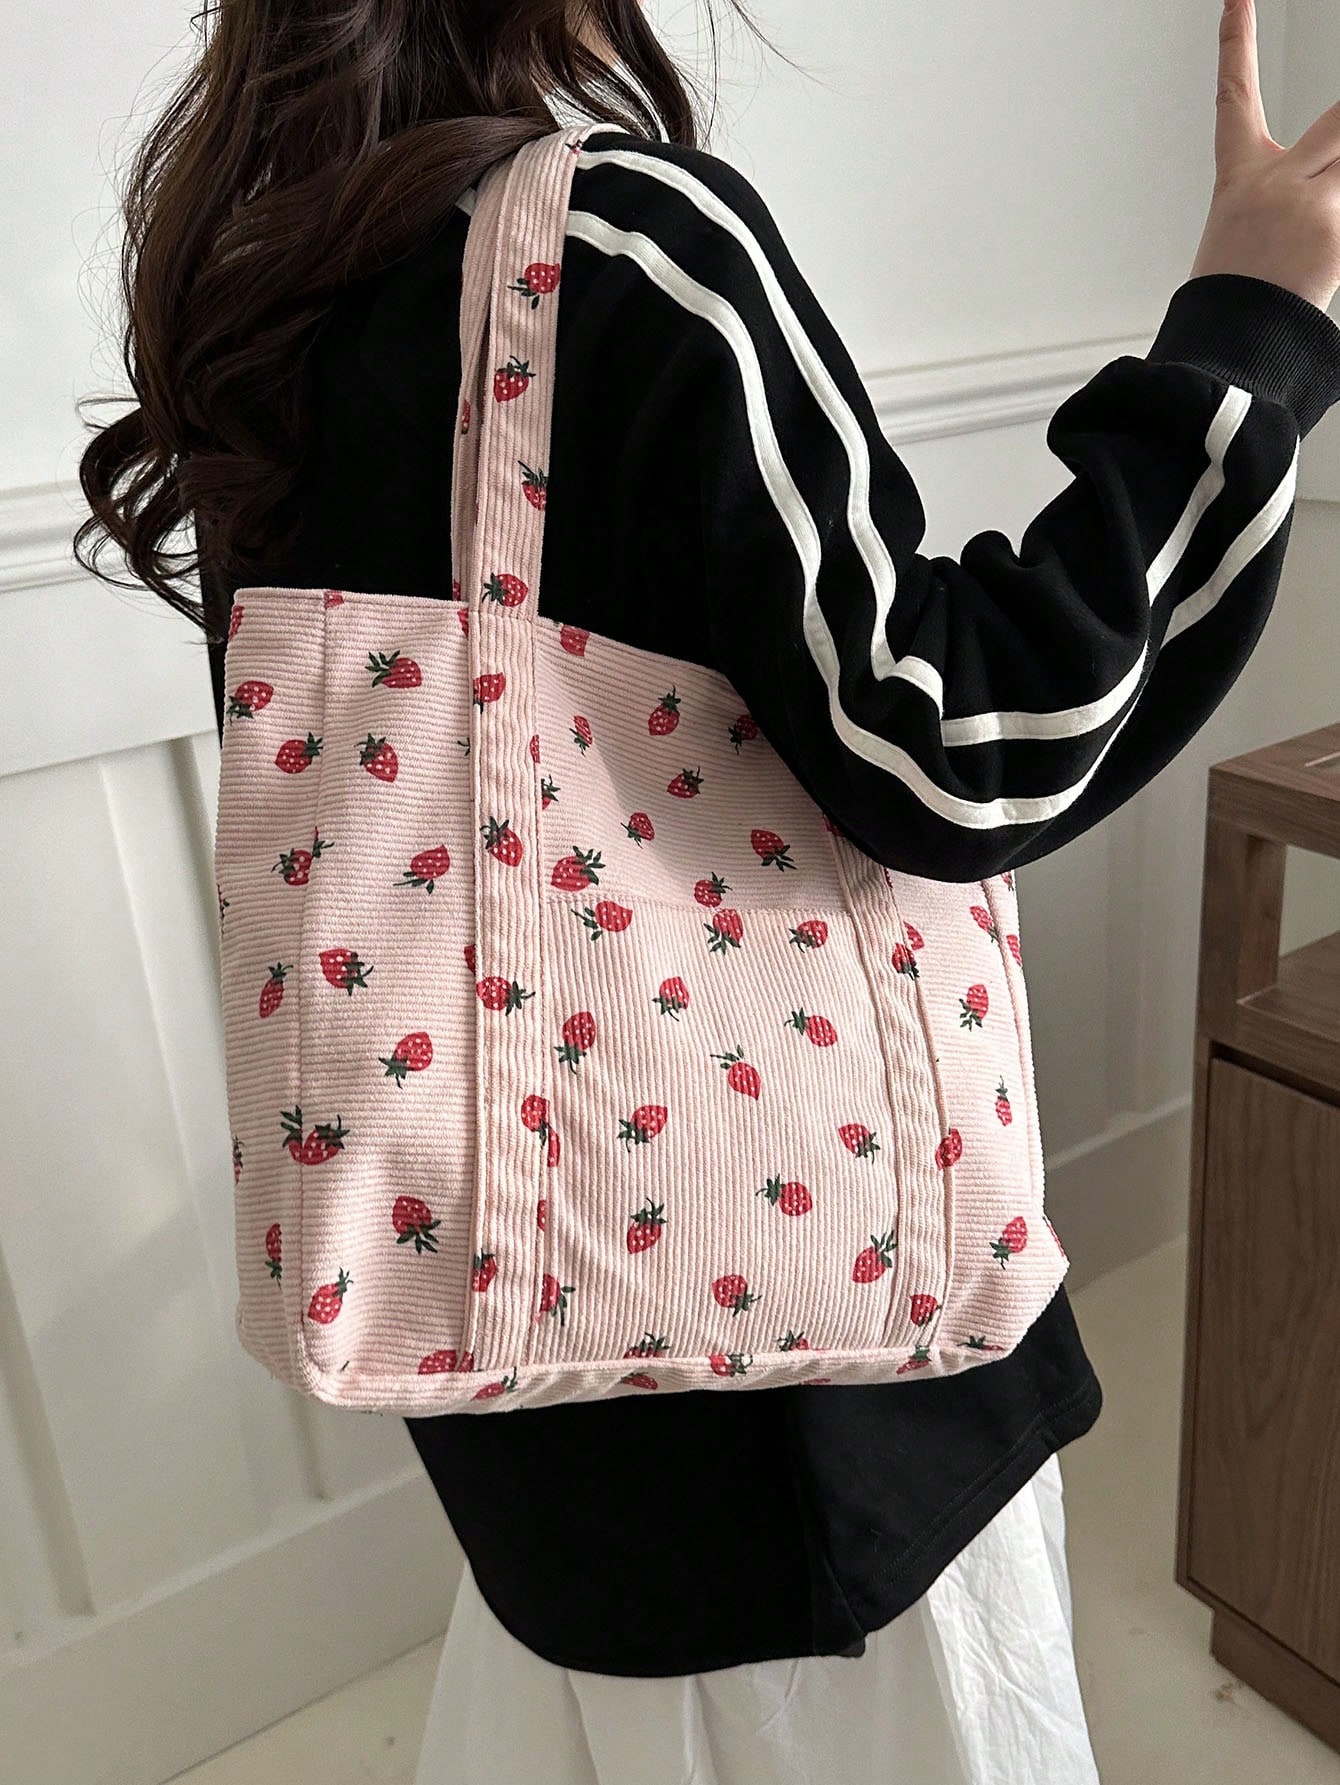 1 шт. женская модная элегантная легкая роскошная большая сумка для свиданий или покупок в любое время года, розовый